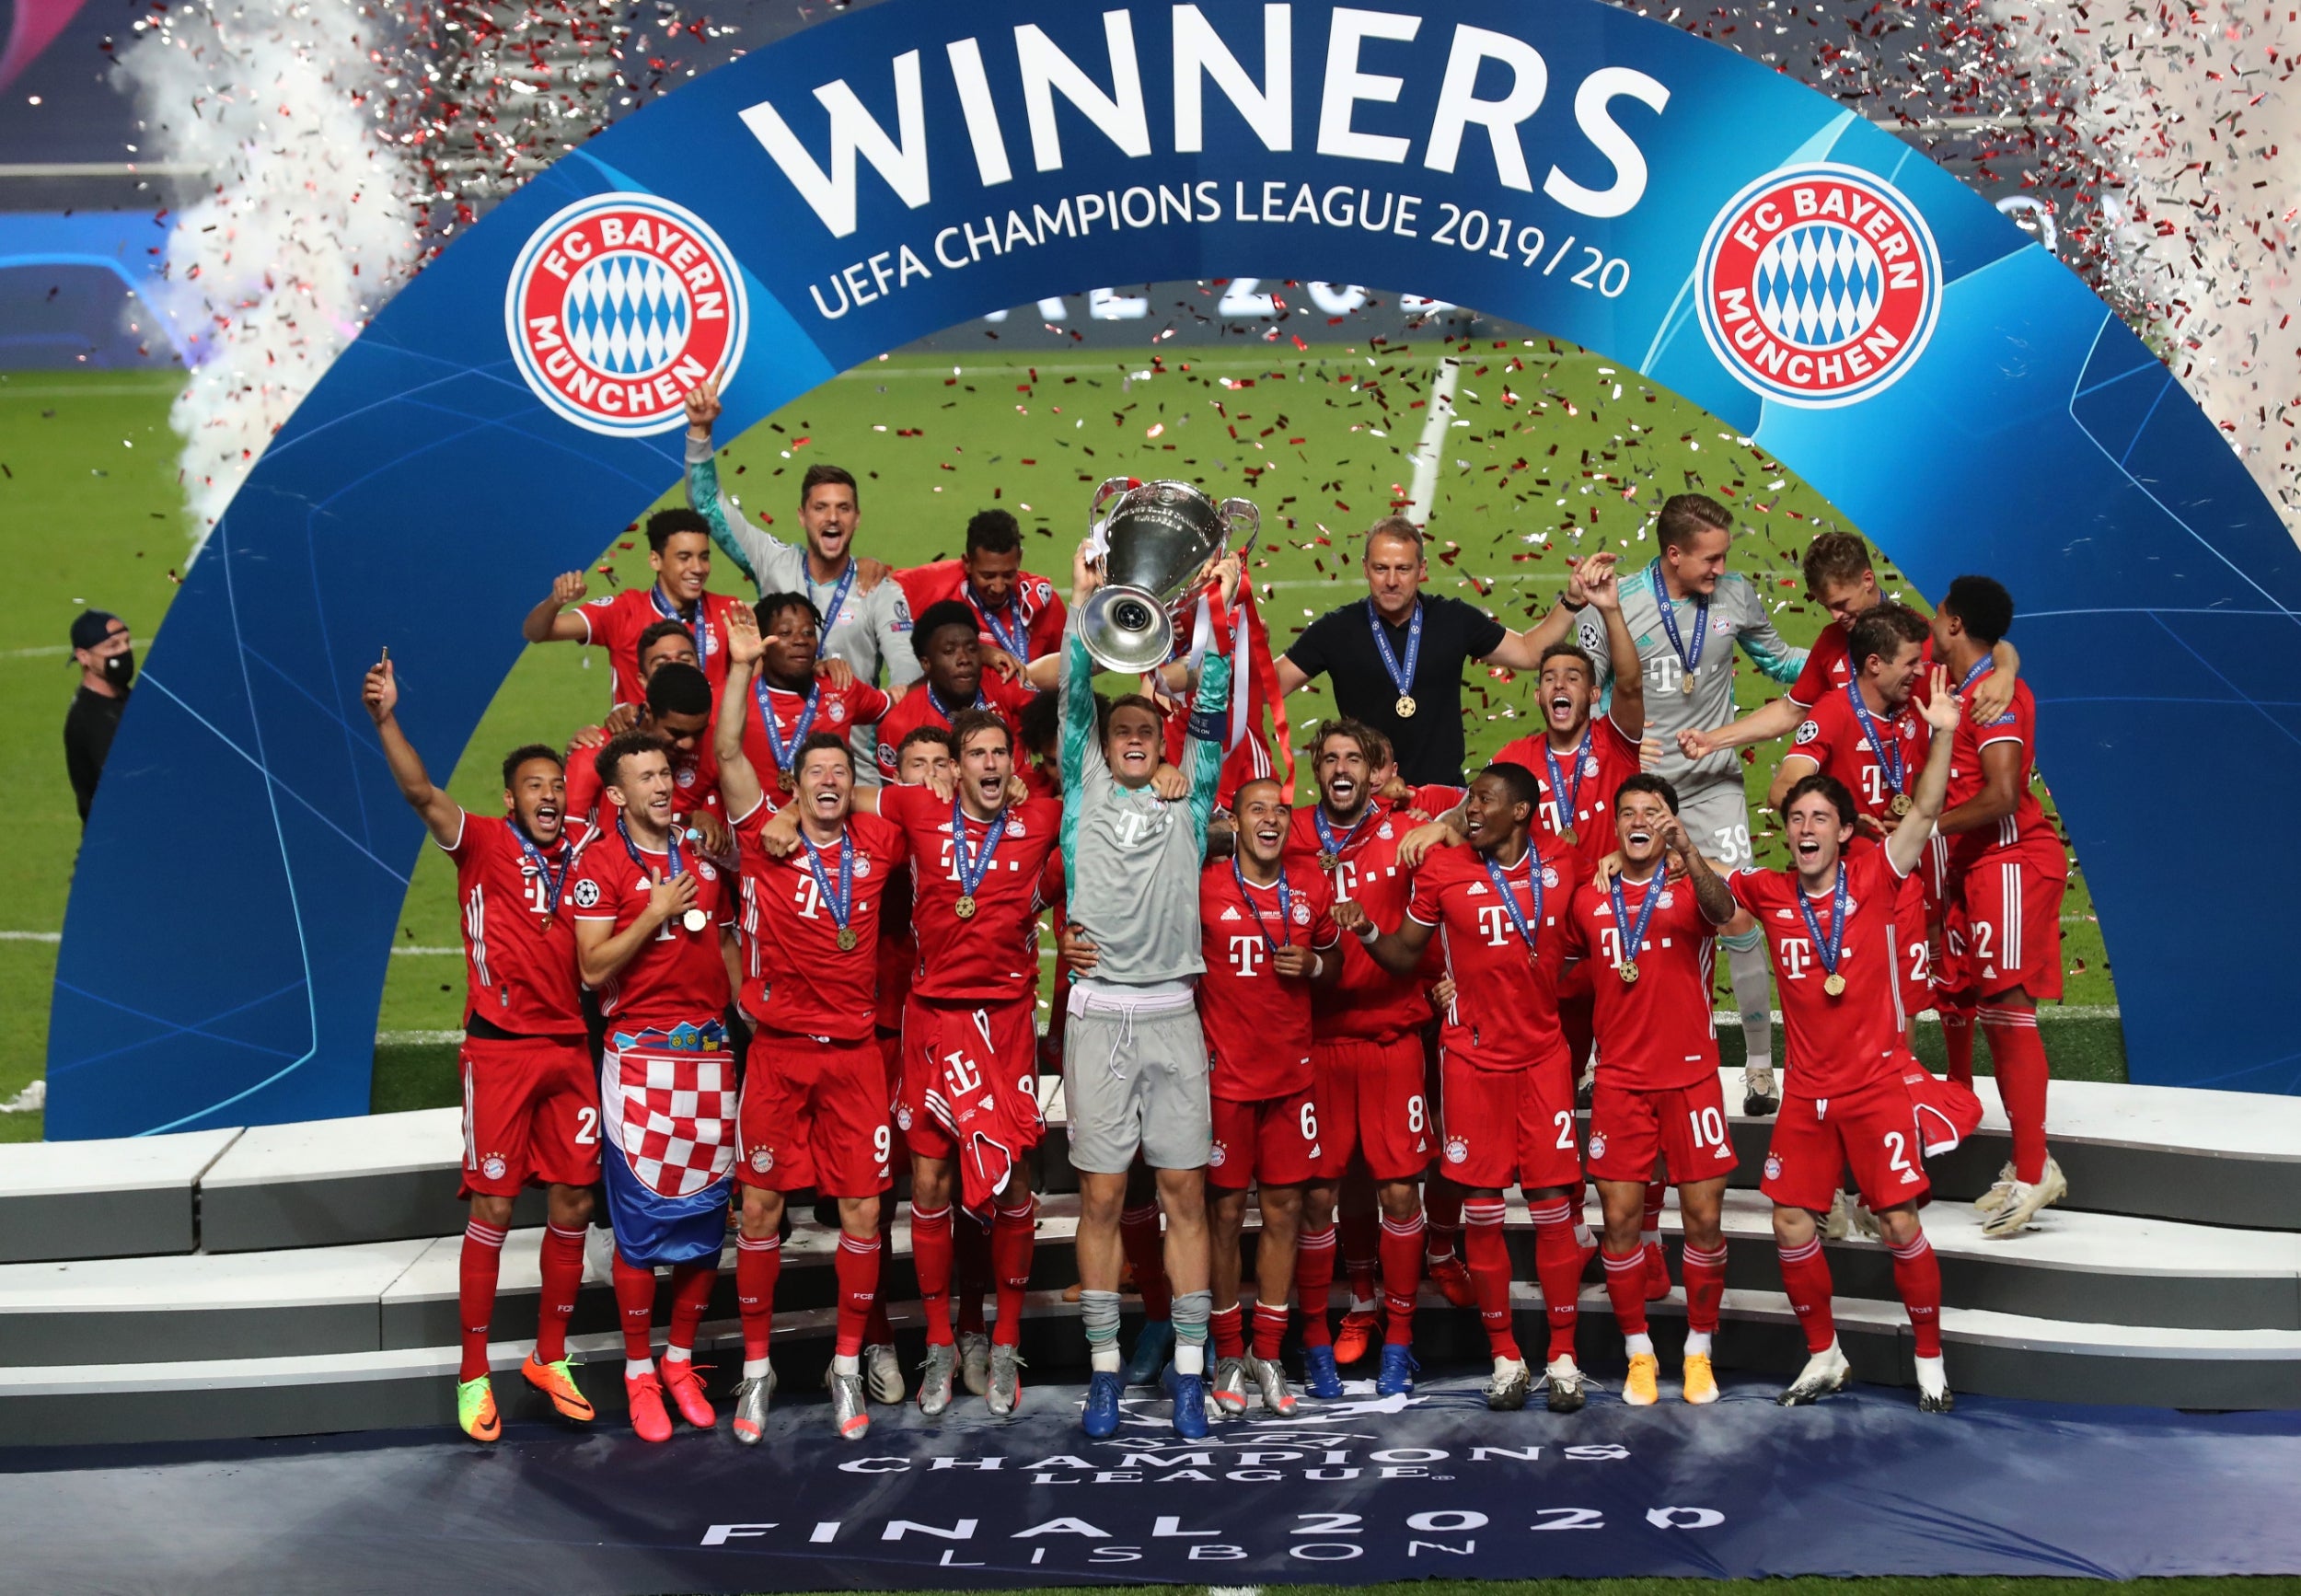 PSG 0-1 Bayern Munich, Champions League final